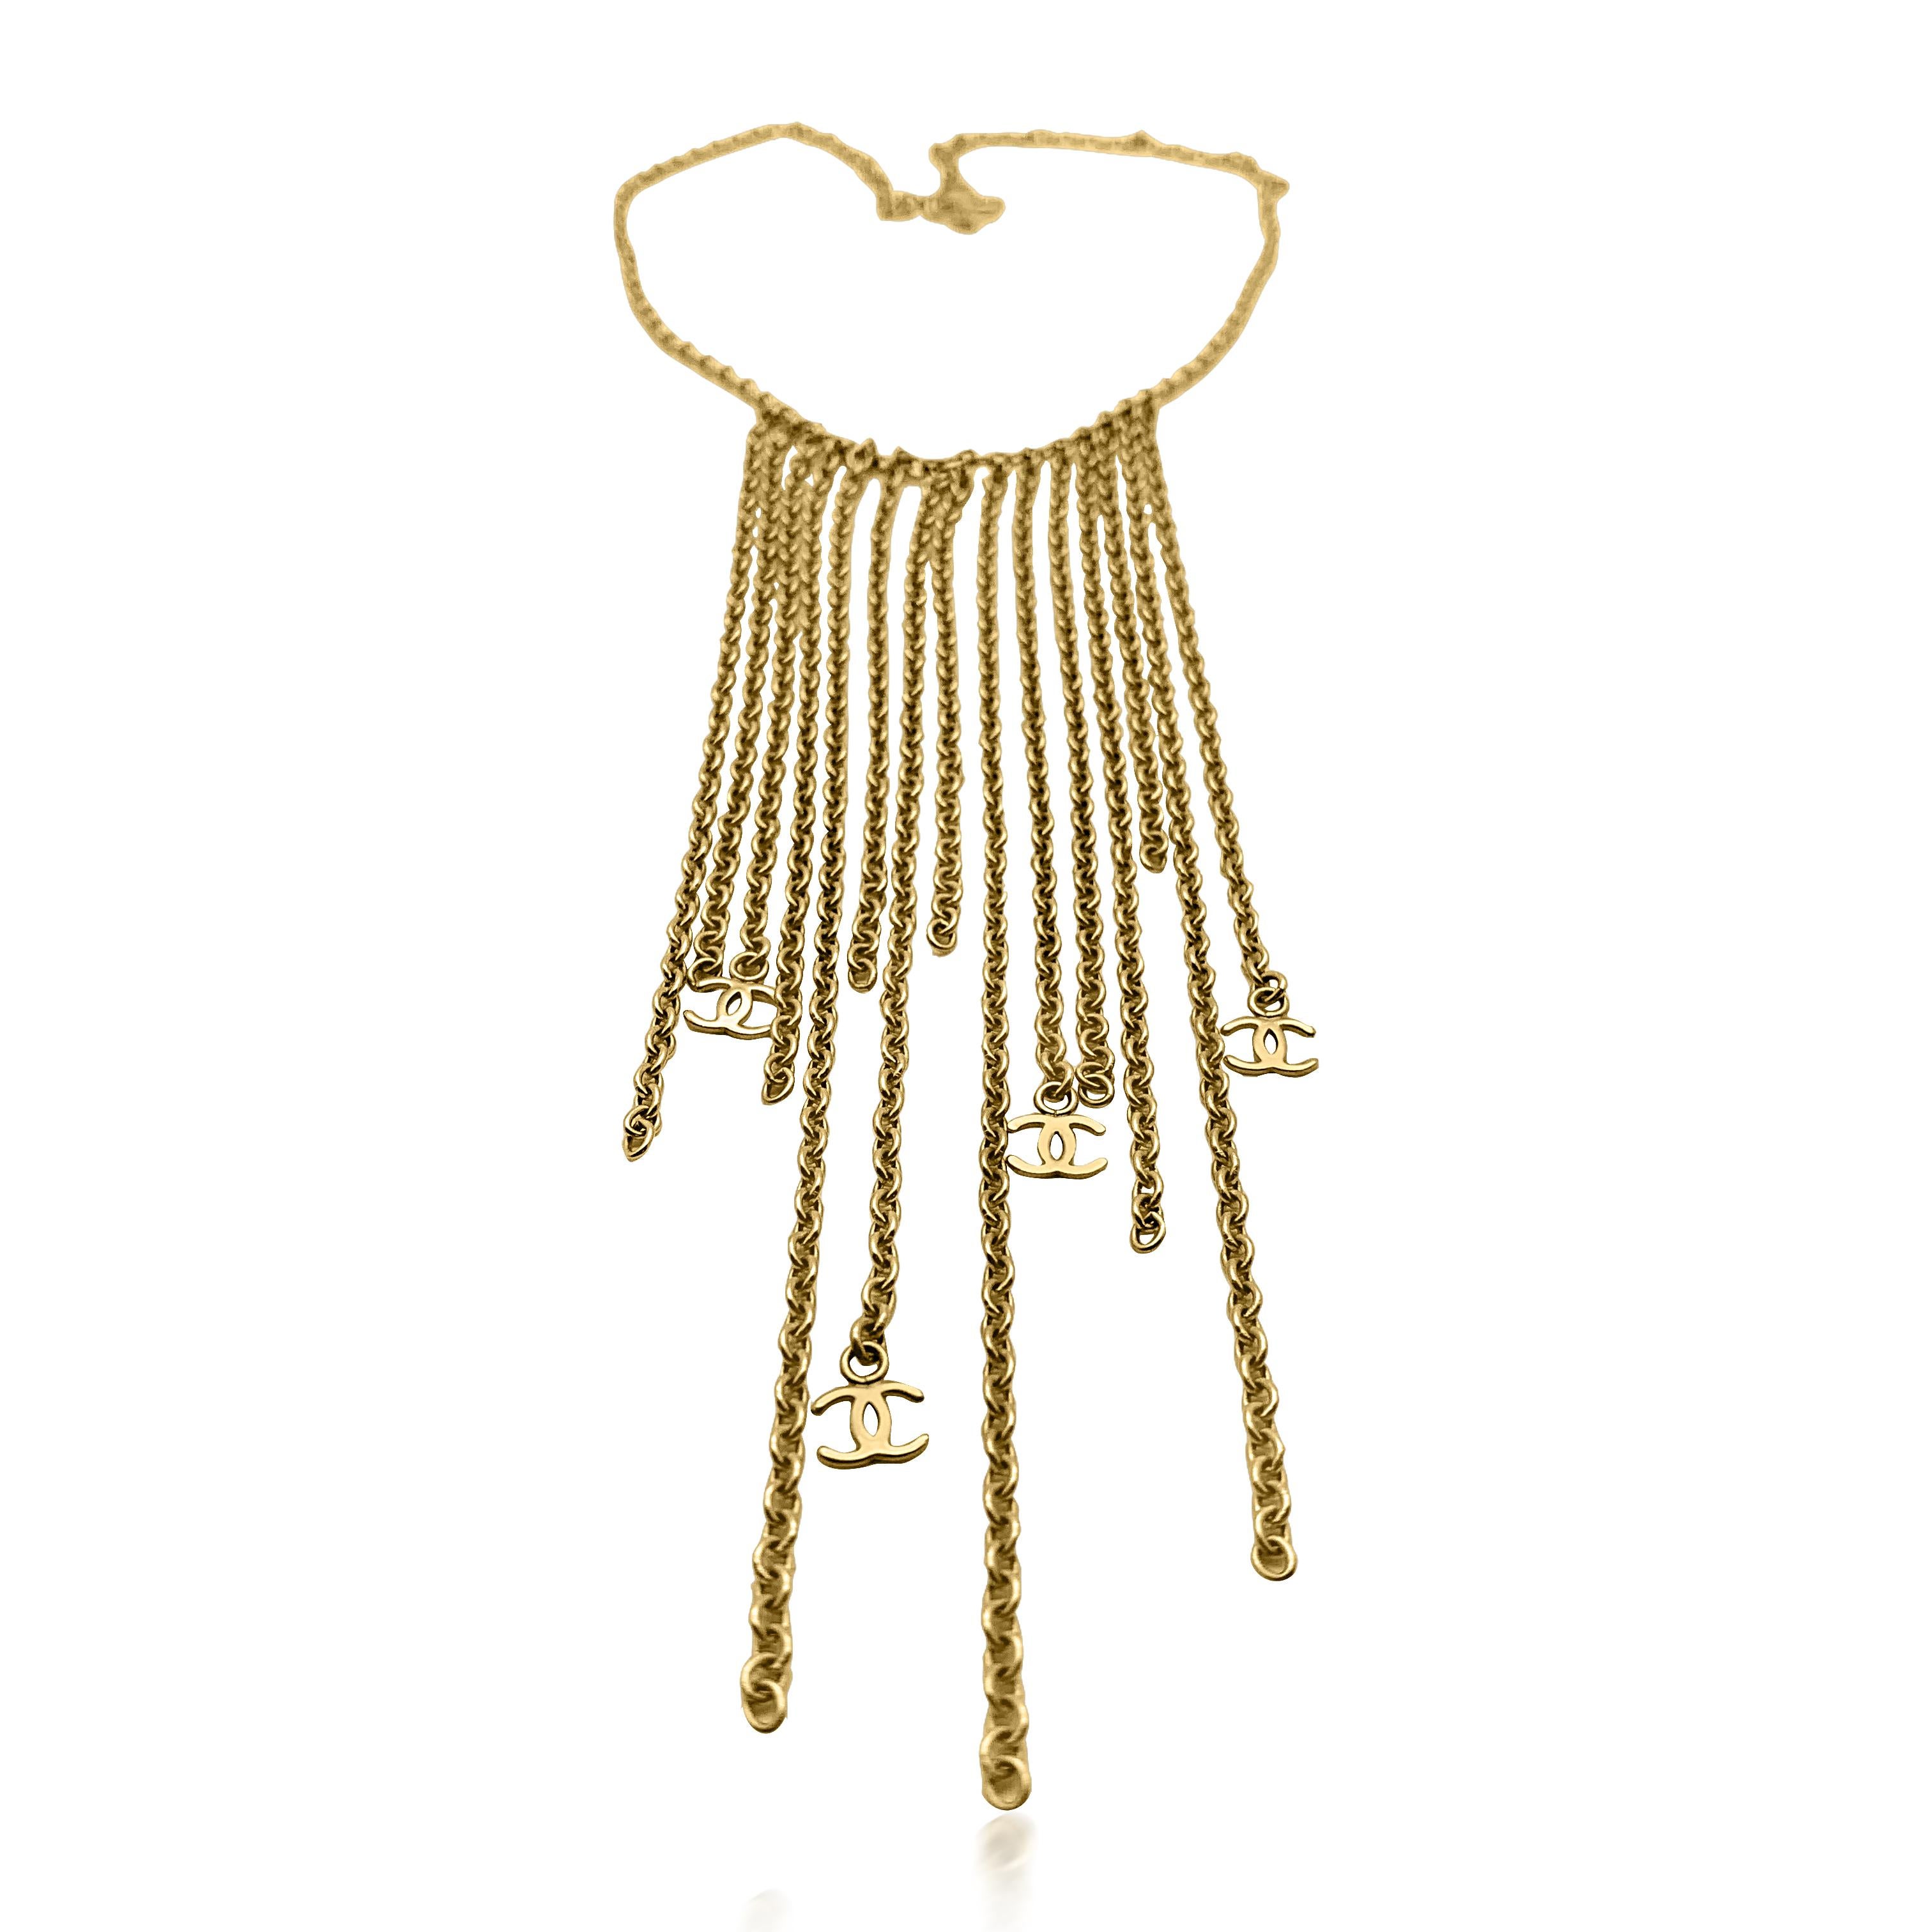 Eine atemberaubende Vintage Chanel Fransen Logo Halskette von 2001. Gefertigt aus vergoldetem Metall. Mit nicht weniger als fünfzehn langen Kettentropfen, die einen Fransen-Latz-Effekt erzeugen, und vier kultigen CC-Logo-Anhängern ist sie perfekt.